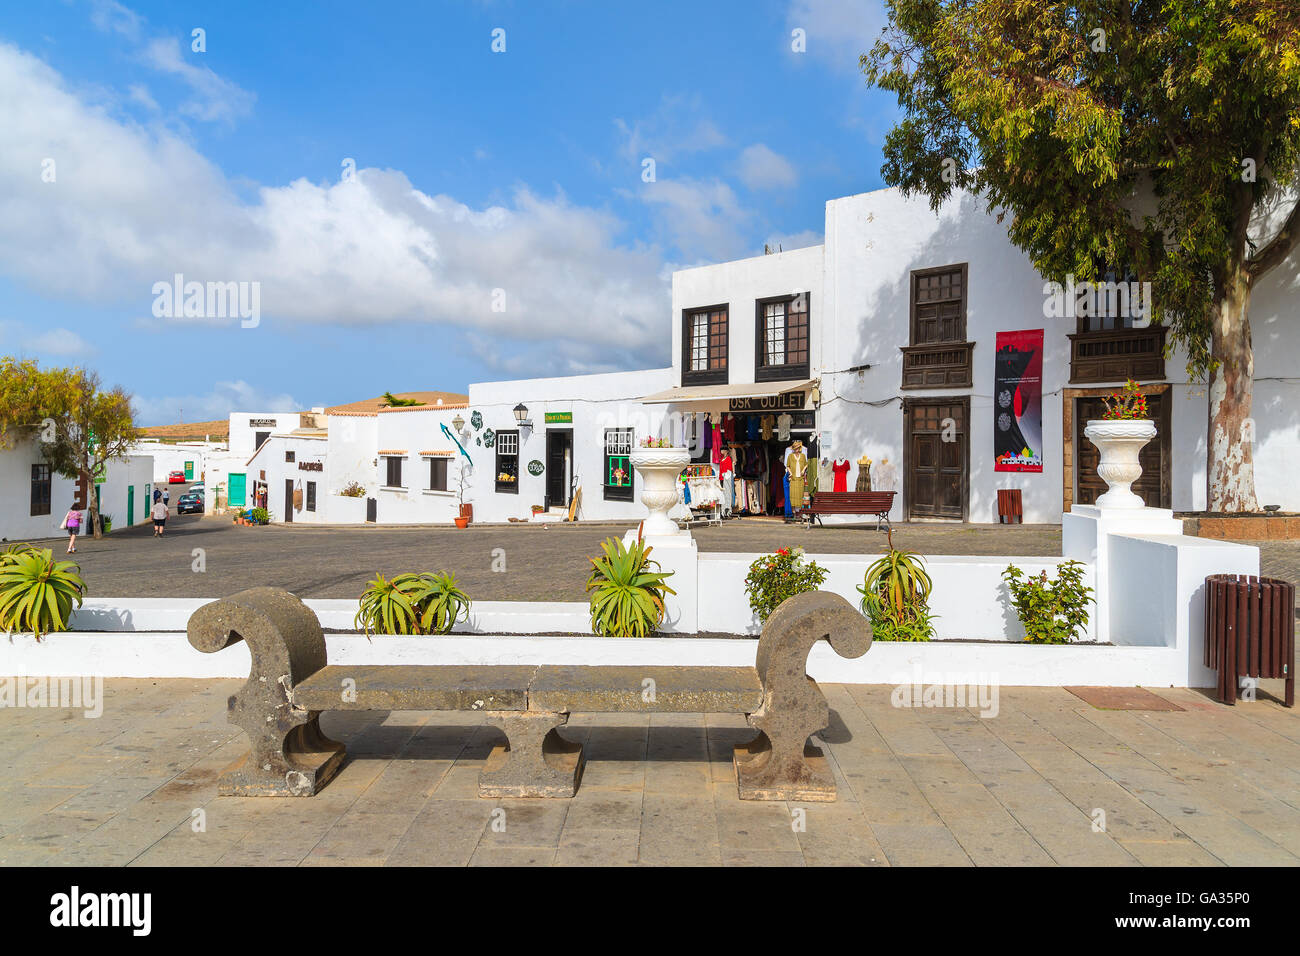 TEGUISE TOWN, Lanzarote Island - Jan 14, 2015: negozi e case nella città vecchia di Teguise. Questa città è ex capitale dell'isola di Lanzarote e è molto popolare attrazione per i turisti che visitano l'isola. Foto Stock